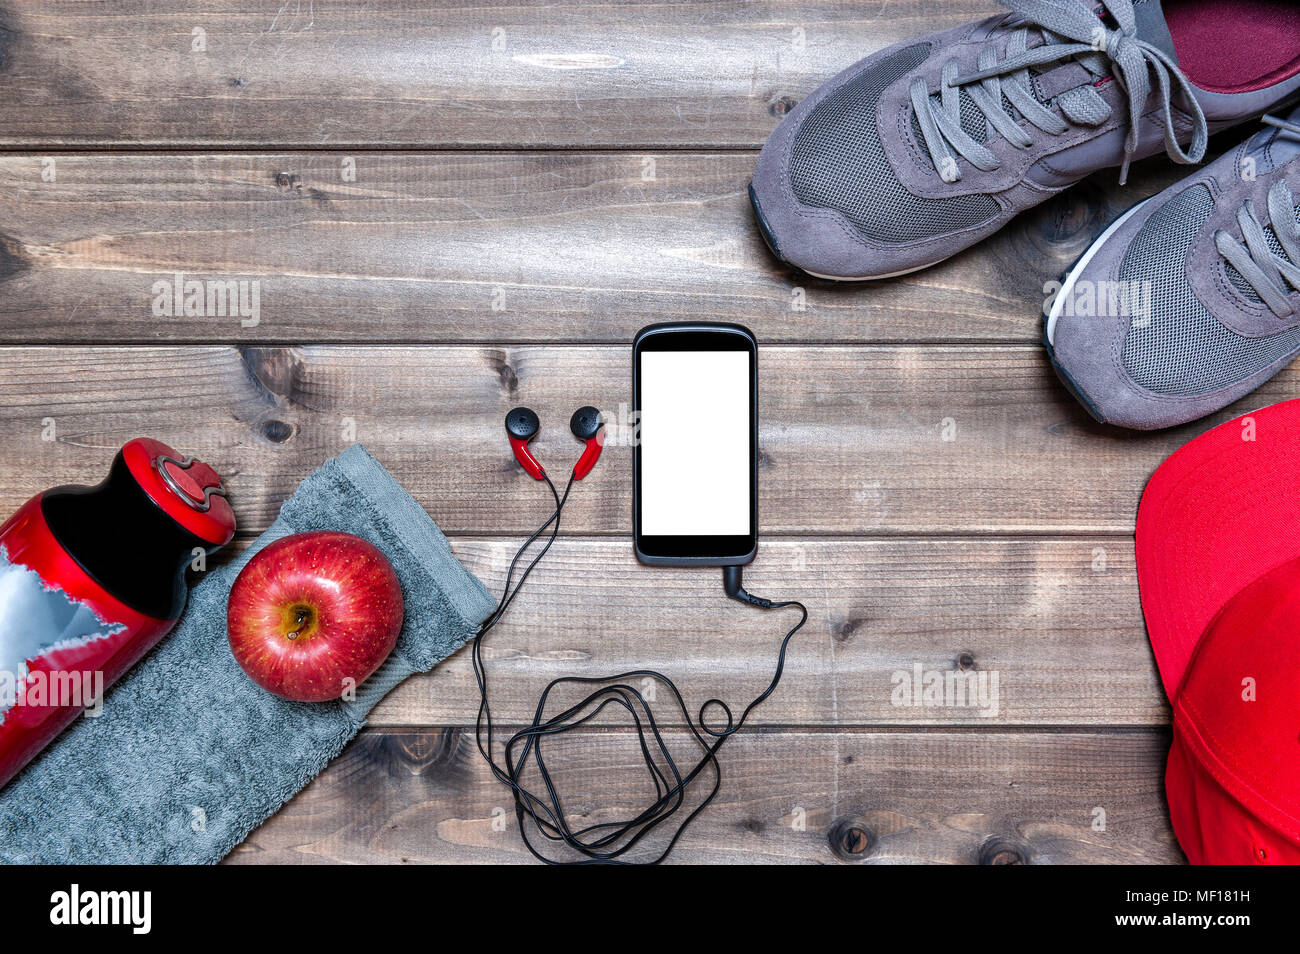 Vista superior de una manzana roja, zapatos deportivos, auriculares de audio,  smartphone, sombrero, toalla y botella de agua fotografiada sobre una mesa  de madera antigua. Espacio de texto Fotografía de stock -